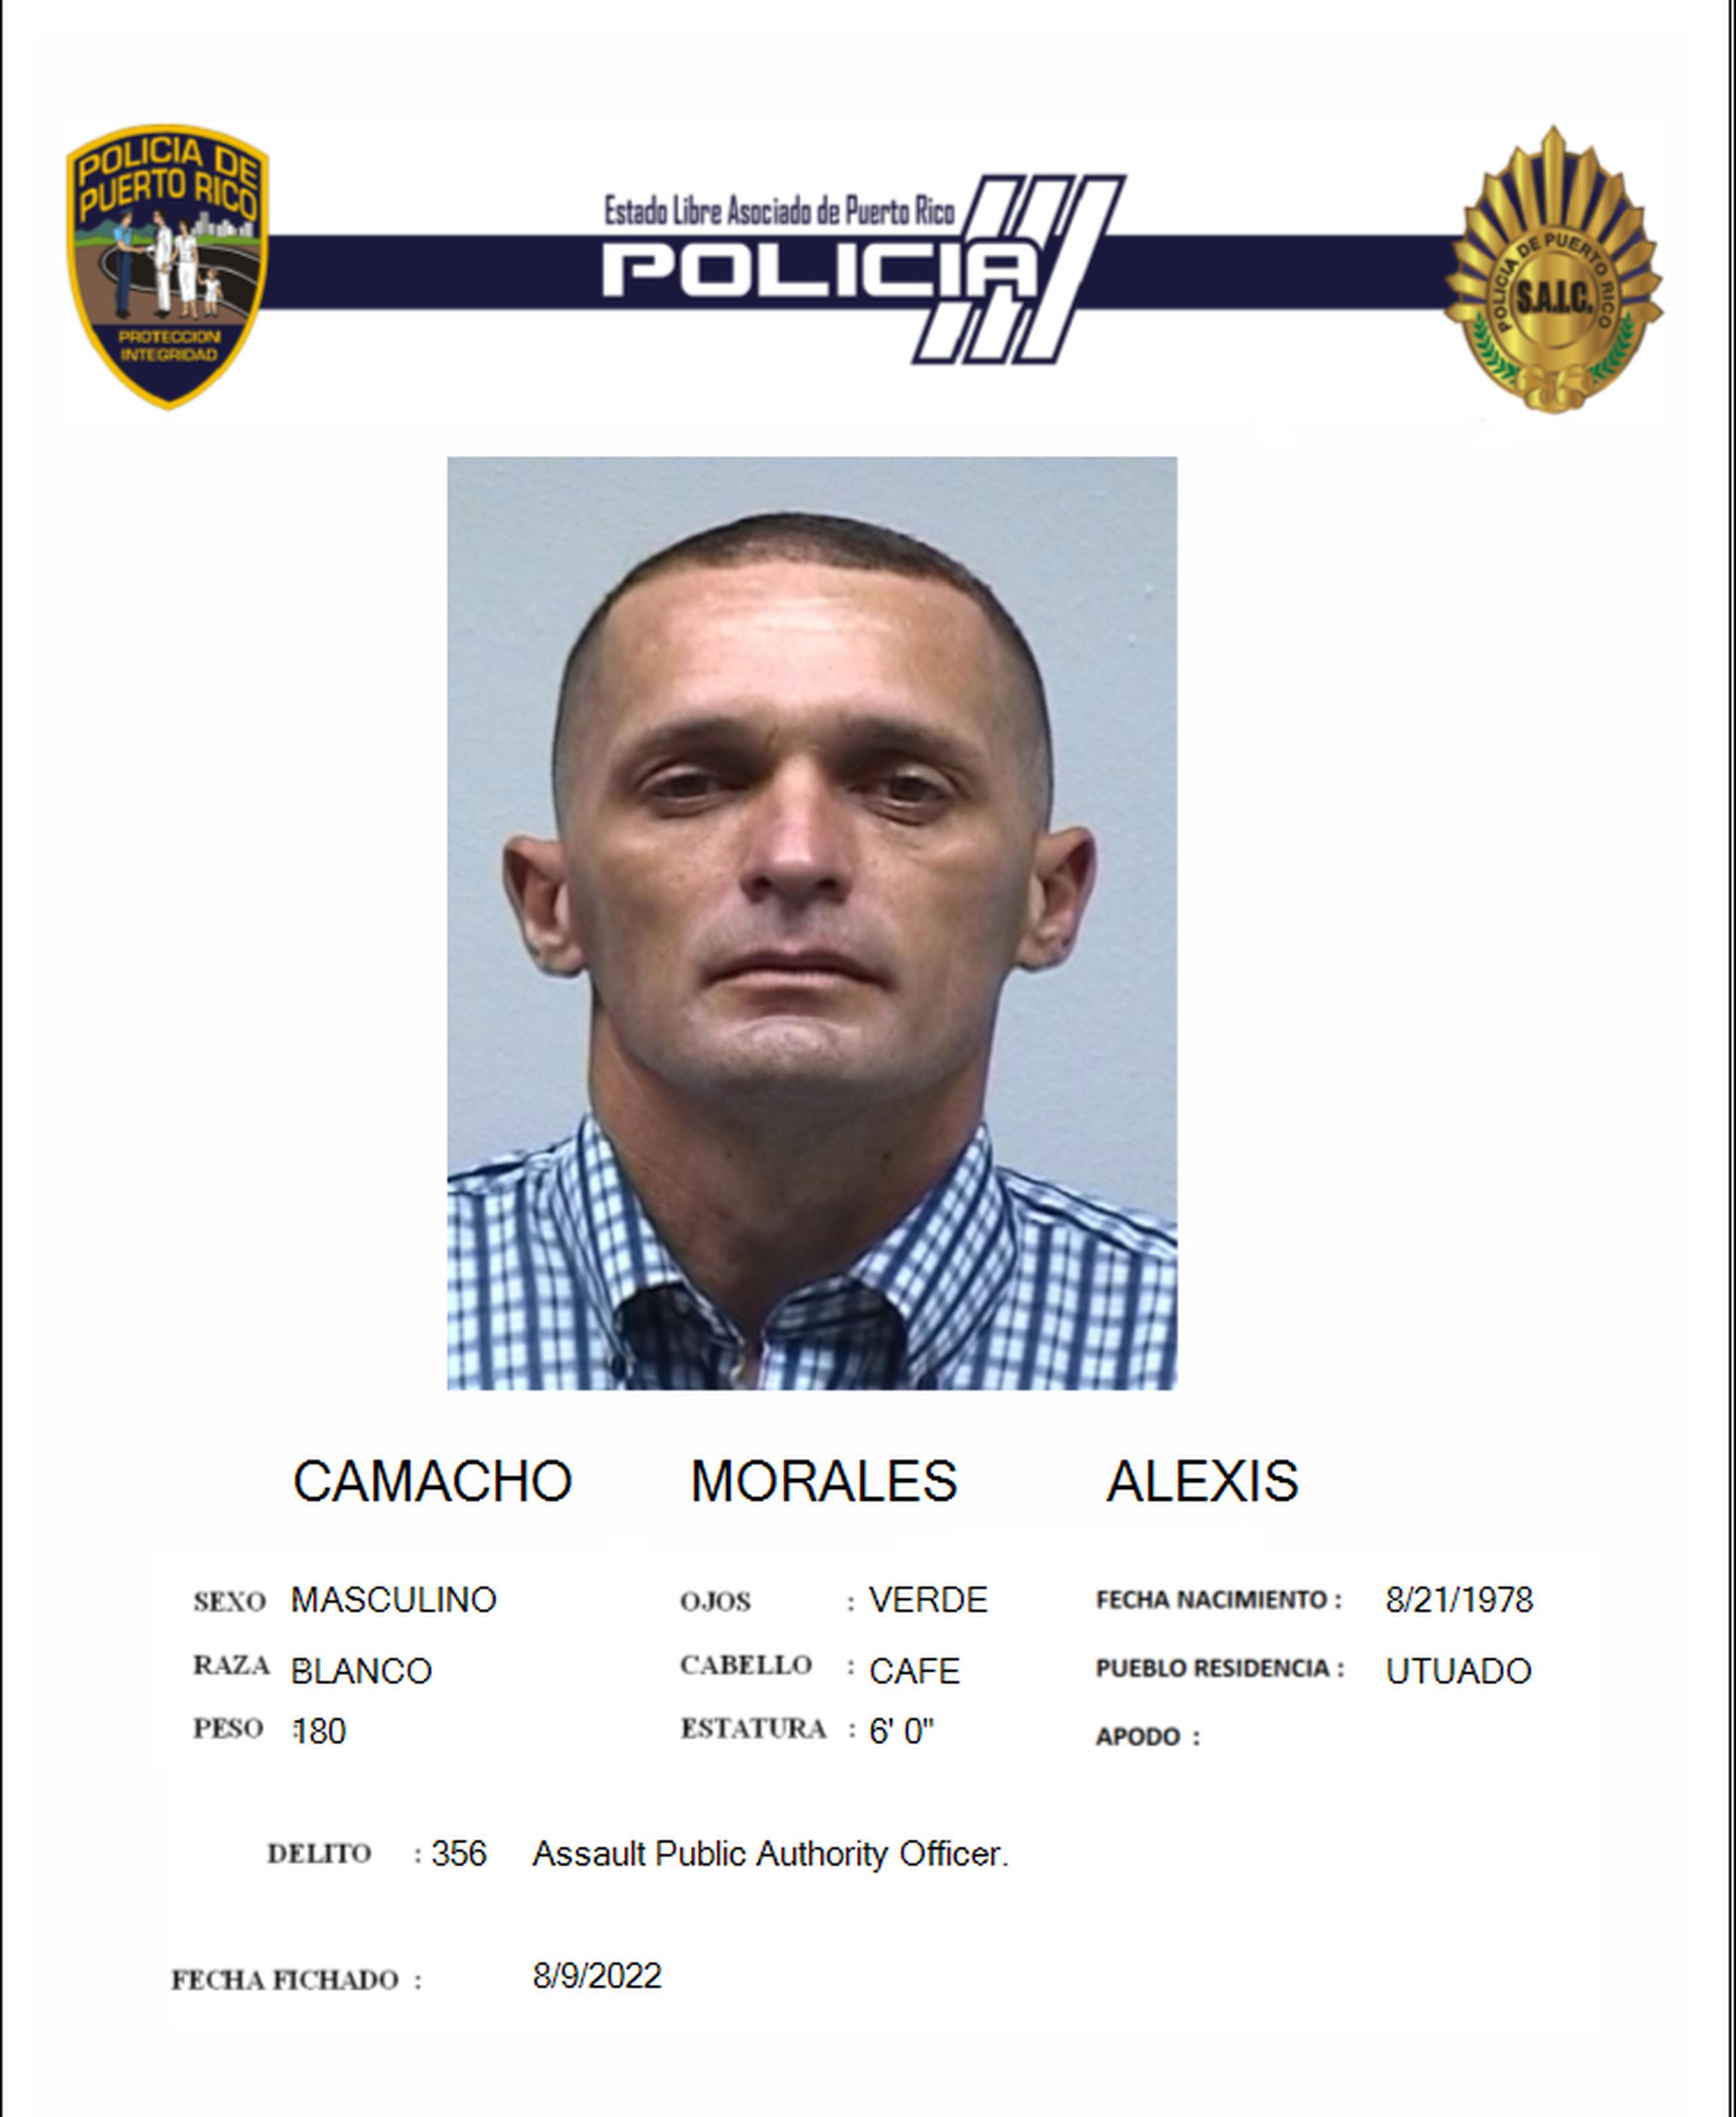 Alexis Camacho Morales fue acusado por empleo de la violencia o intimidación contra la autoridad pública.